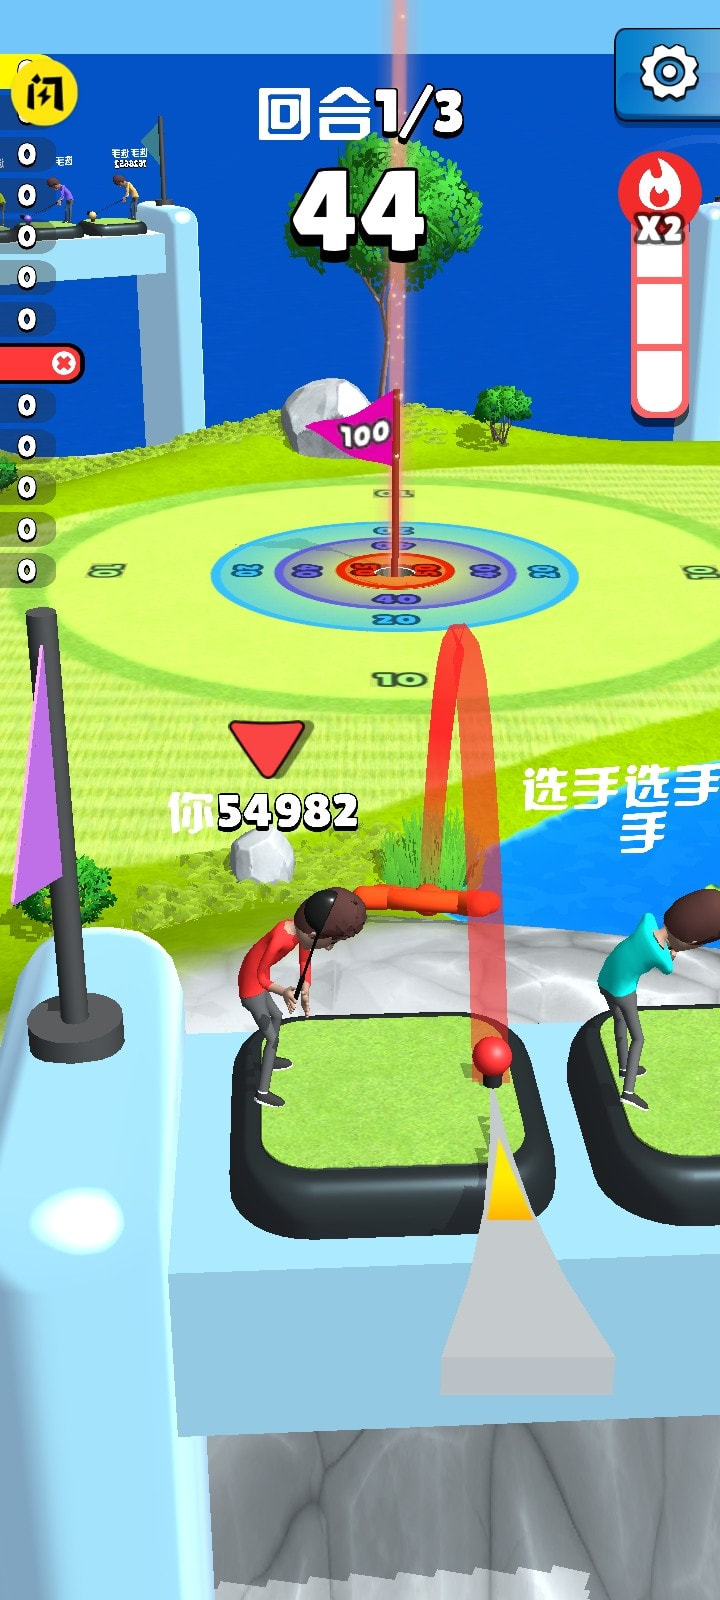 皇家高尔夫游戏客户端下载安装手机版1